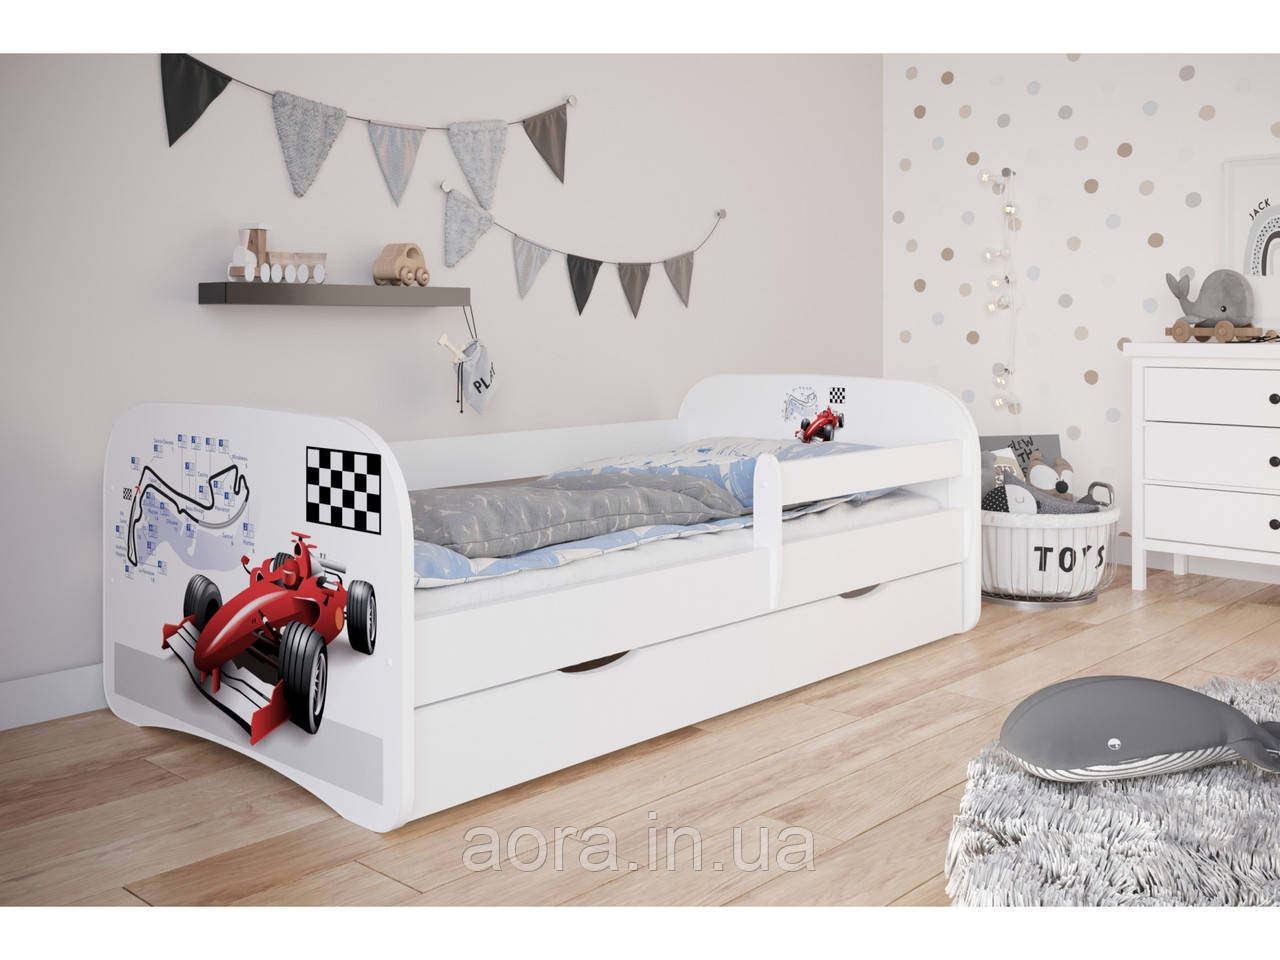 Дитяче ліжко односпальне 160 х 80 Kocot Kids Baby Dreams Формула біле з ящиком Польща